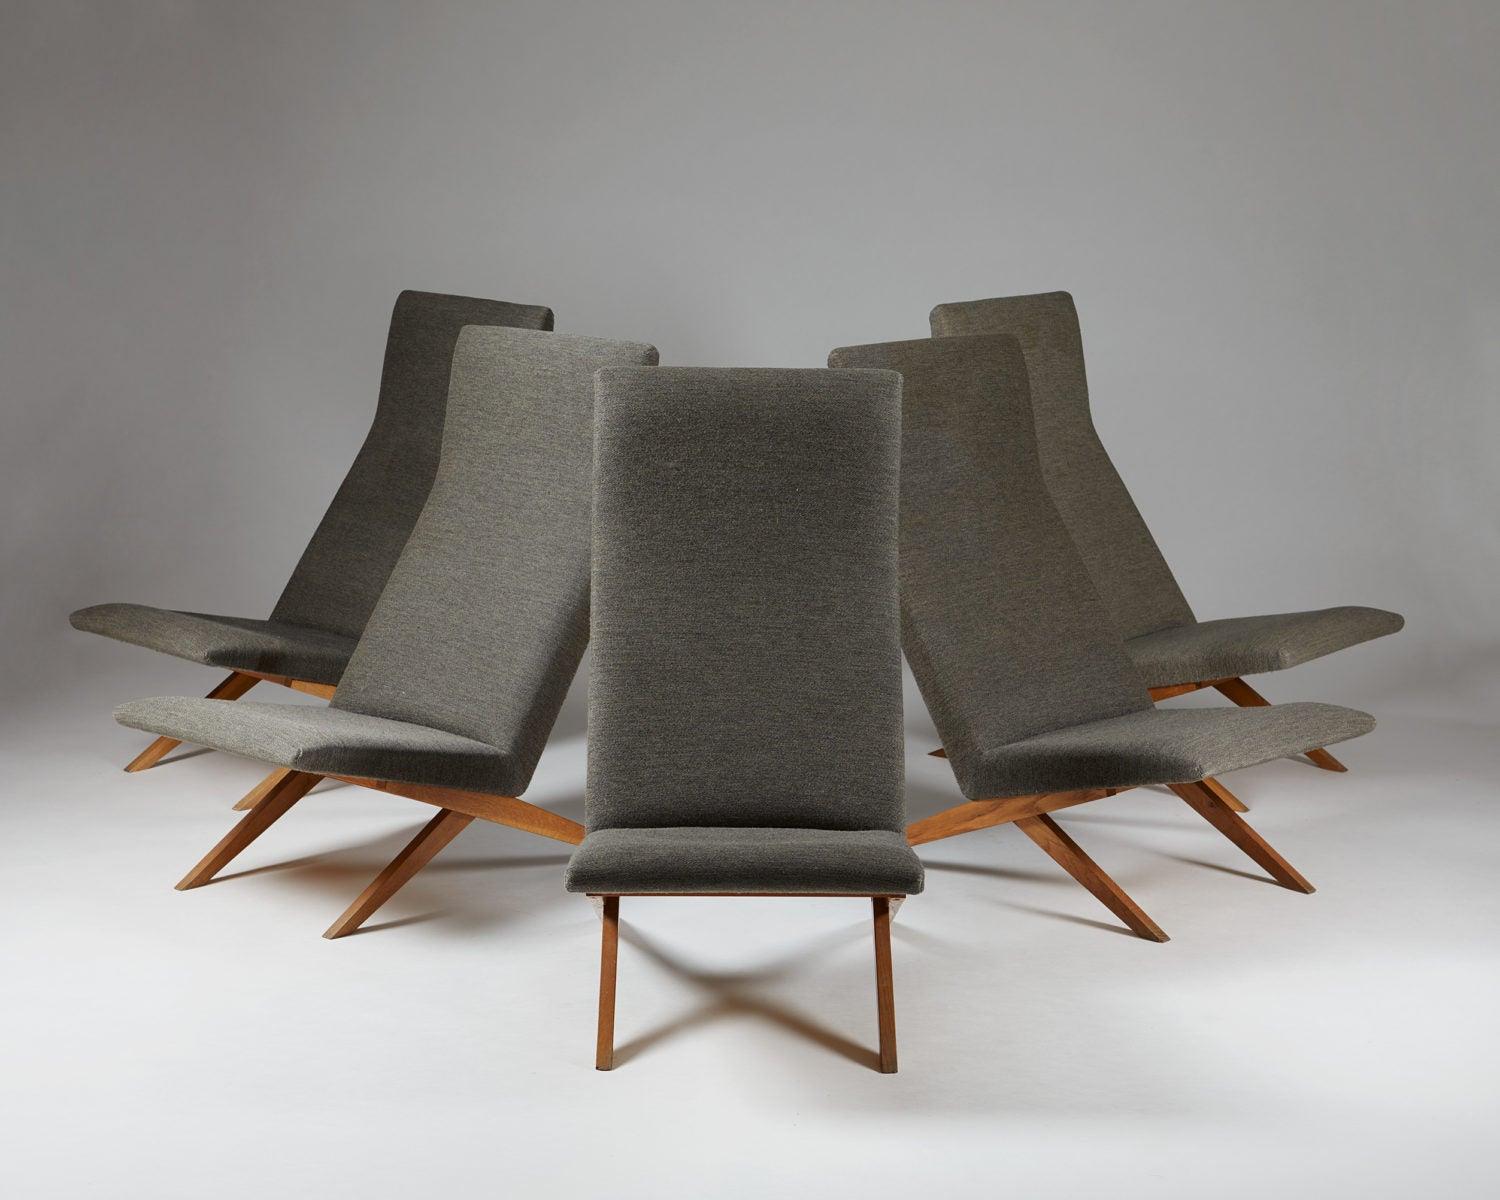 Set of five easy chairs designed by Bodil Kjaer for Harbo Sølvsten,
Denmark, ca 1955.

H: 94.5 cm/ 3' 1